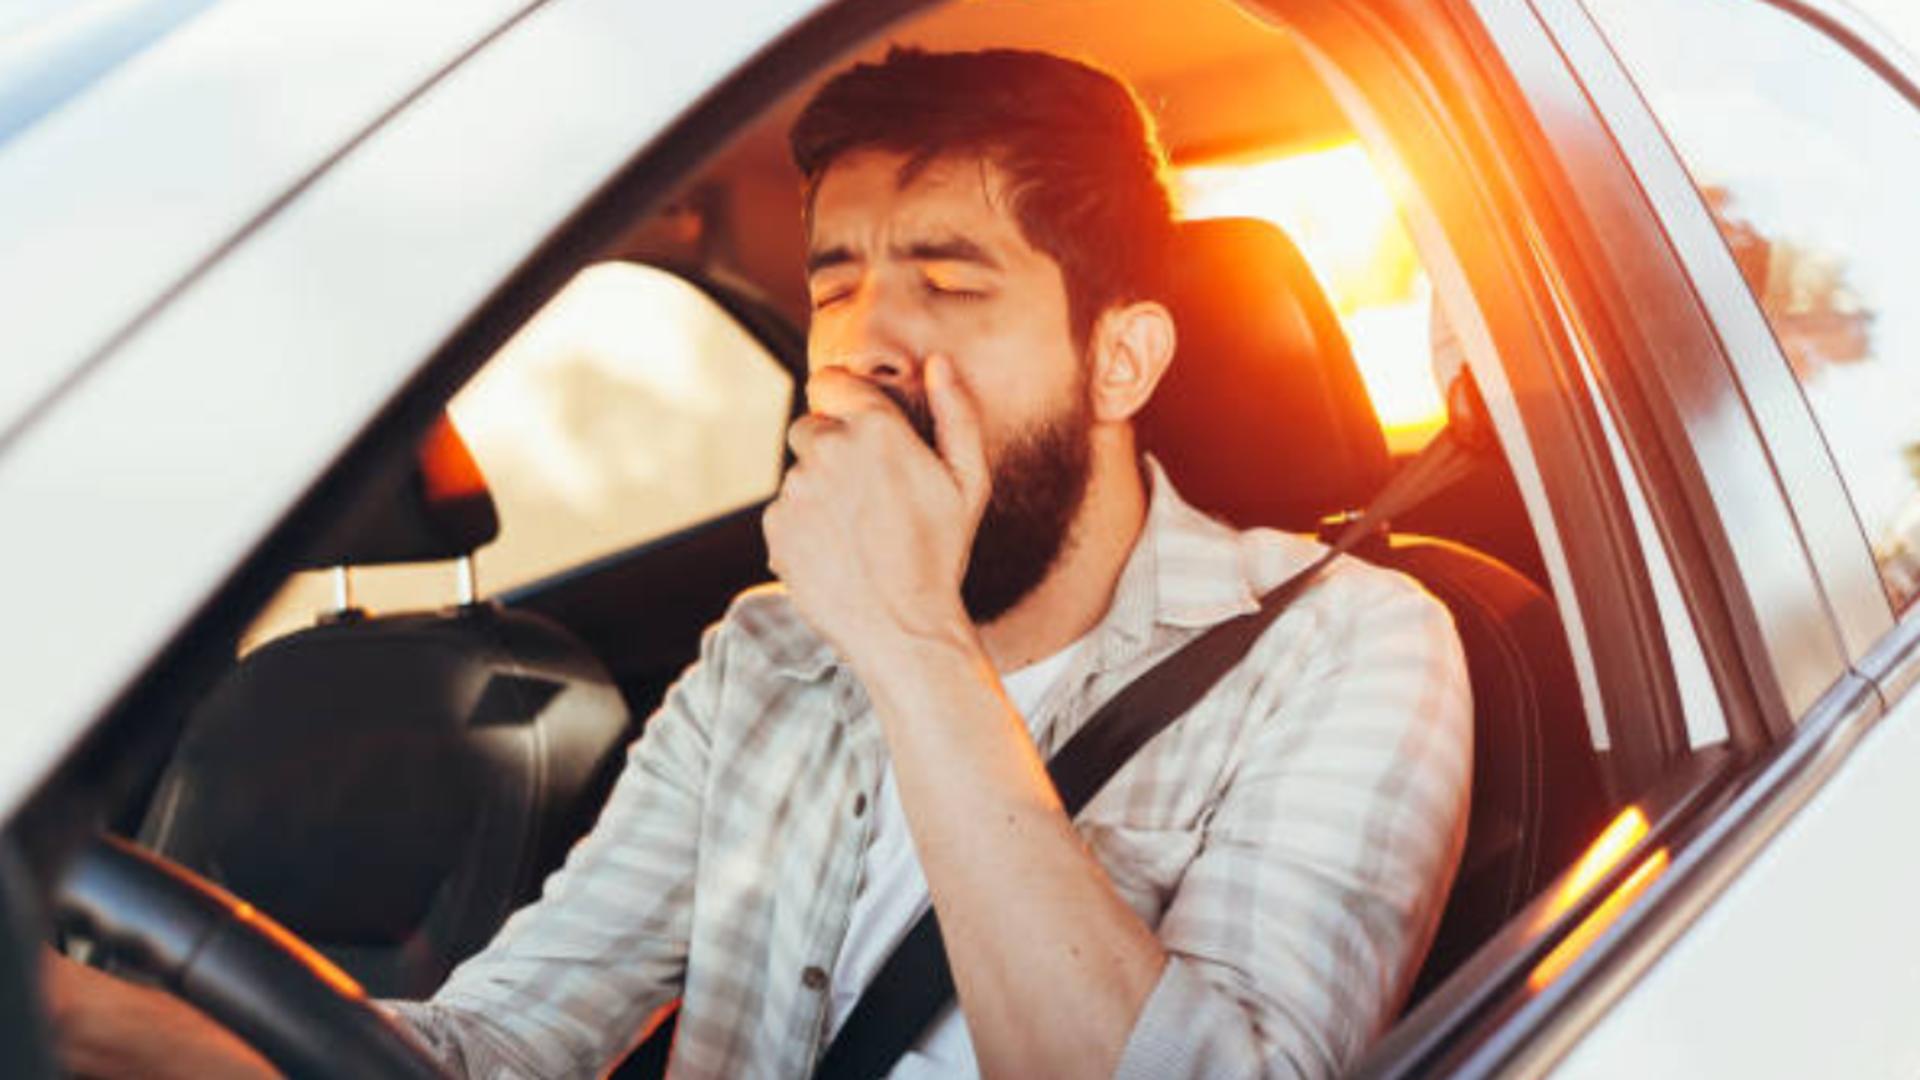 Un test de sânge ar putea fi folosit pentru a prinde și penaliza șoferii care conduc obosiți